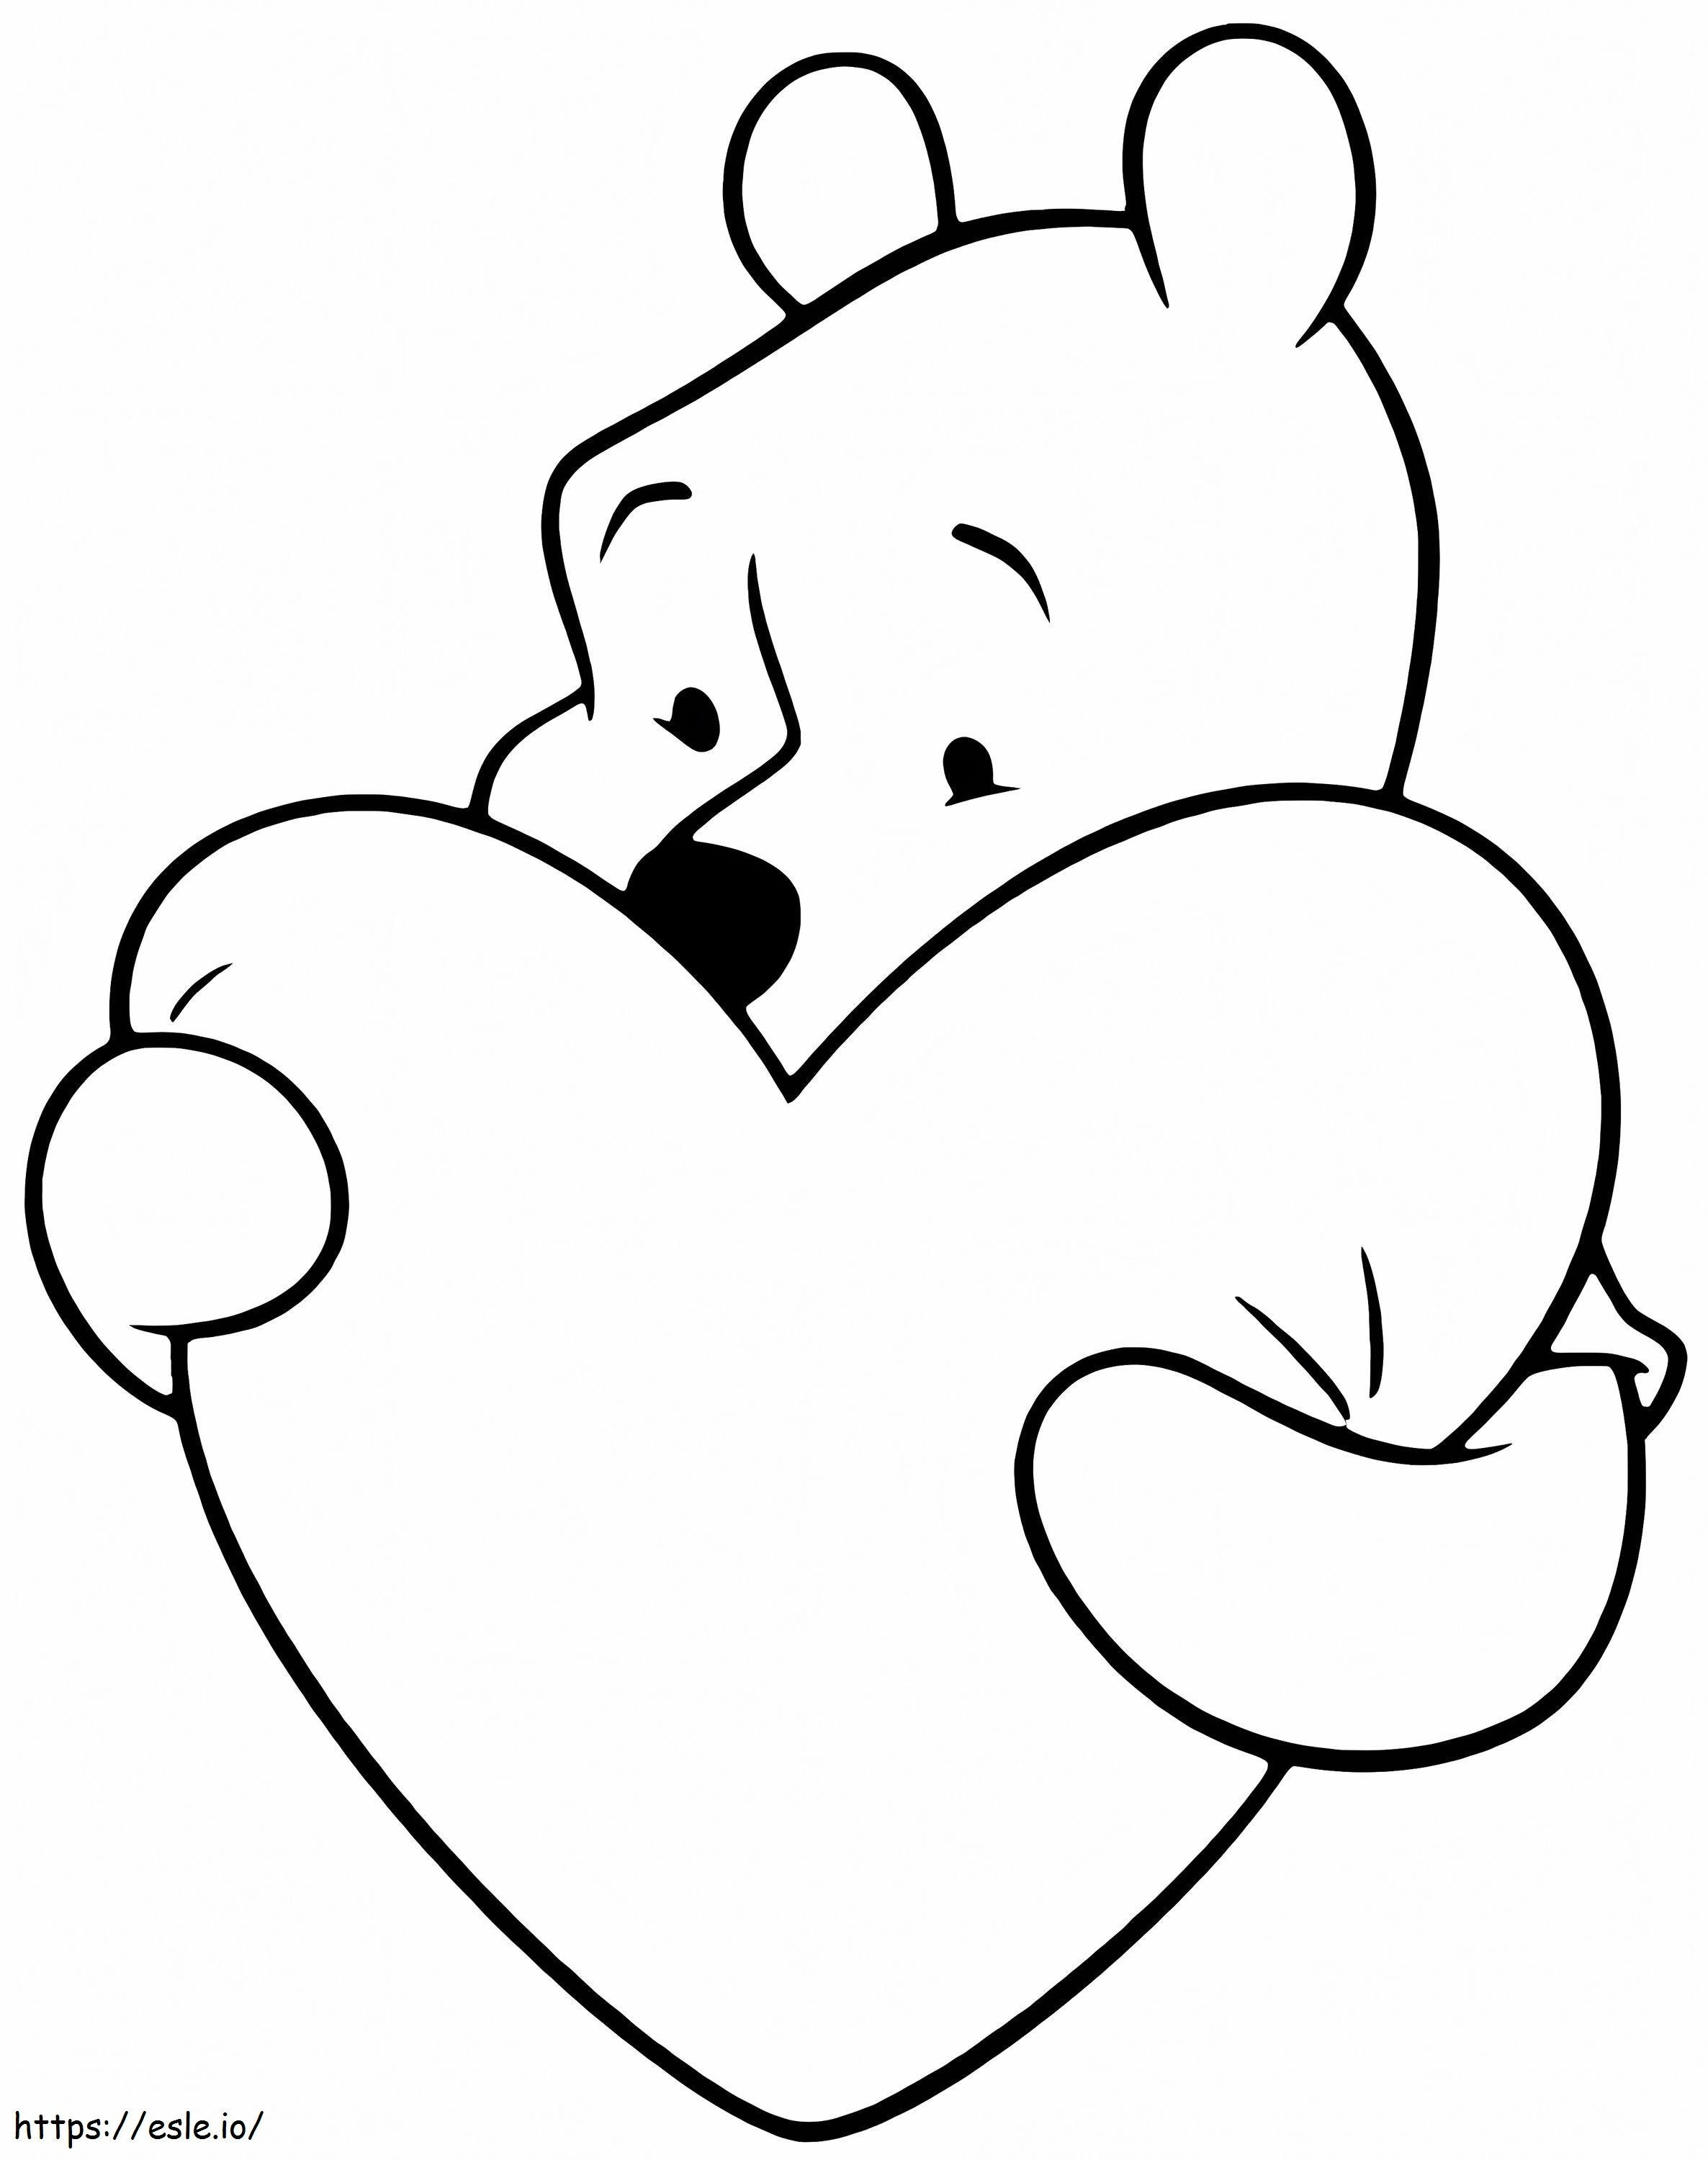 El oso Pooh abraza el corazón para colorear